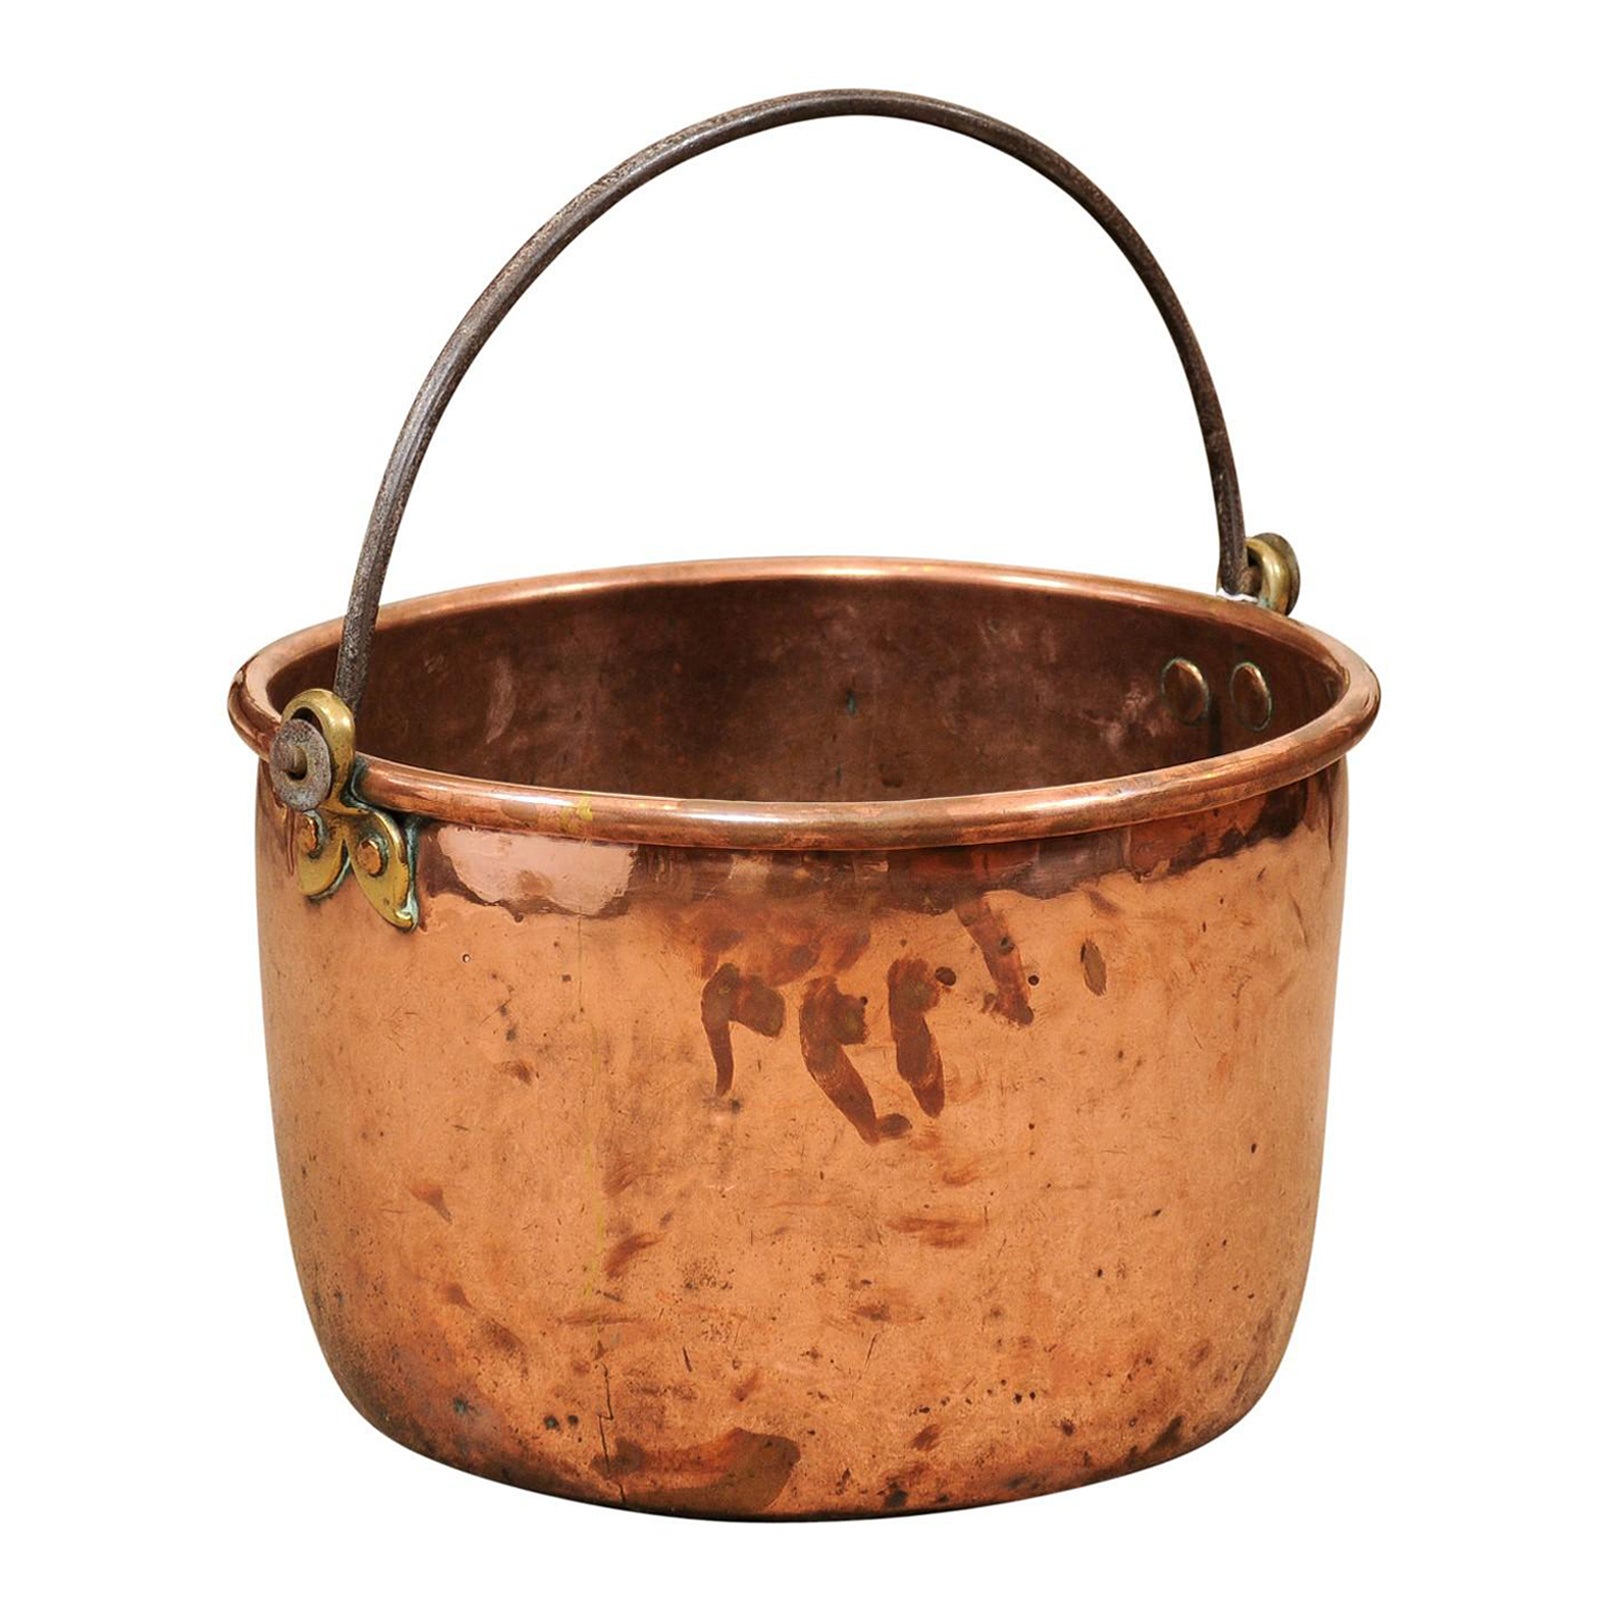  Grand pot en cuivre du 18ème siècle avec poignée en fer forgé